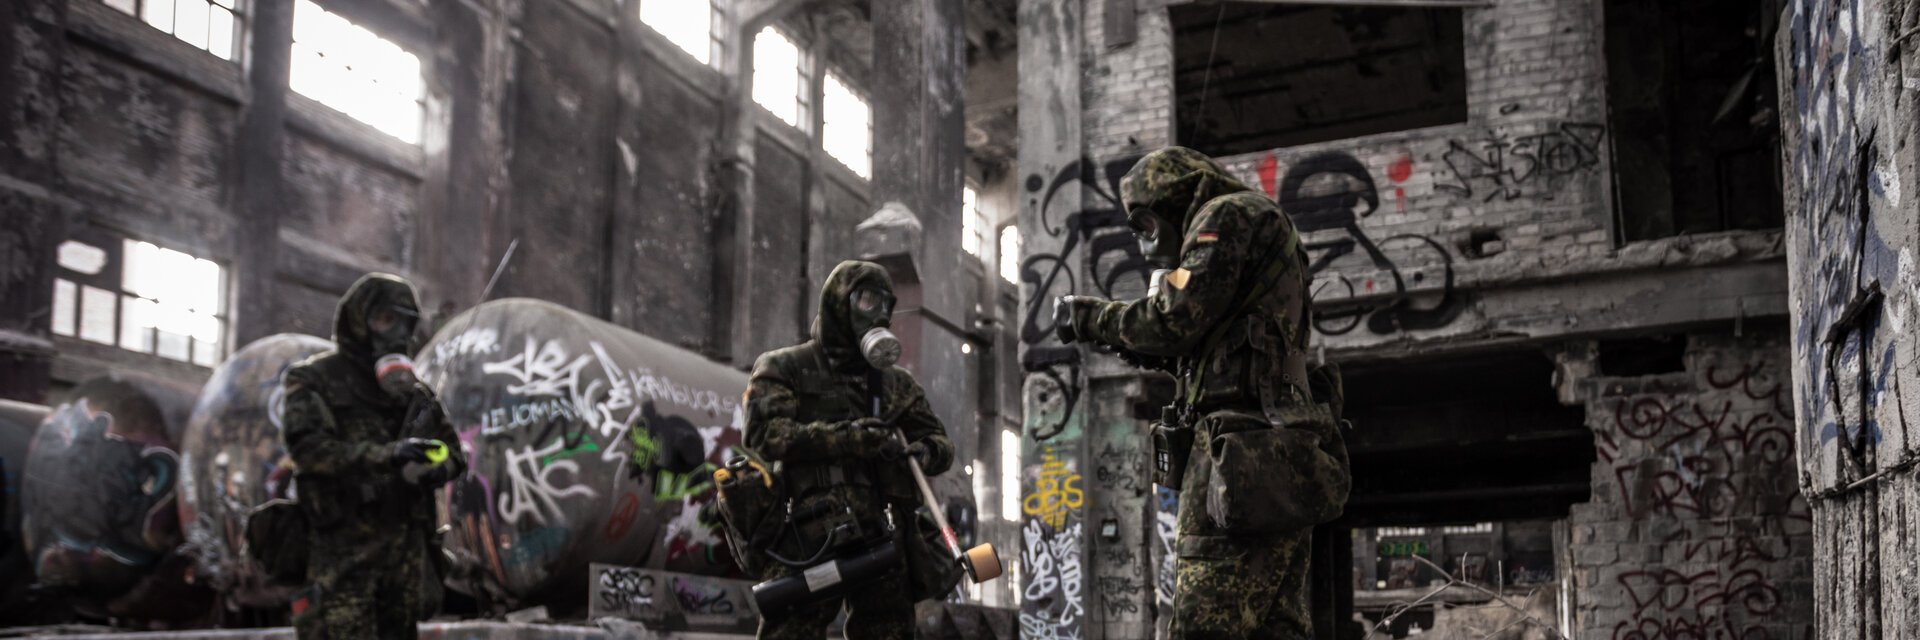 Soldaten der ABC Abwehrtruppe mit Schutzmasken untersuchen eine Lagerhalle auf Kampfstoffe.